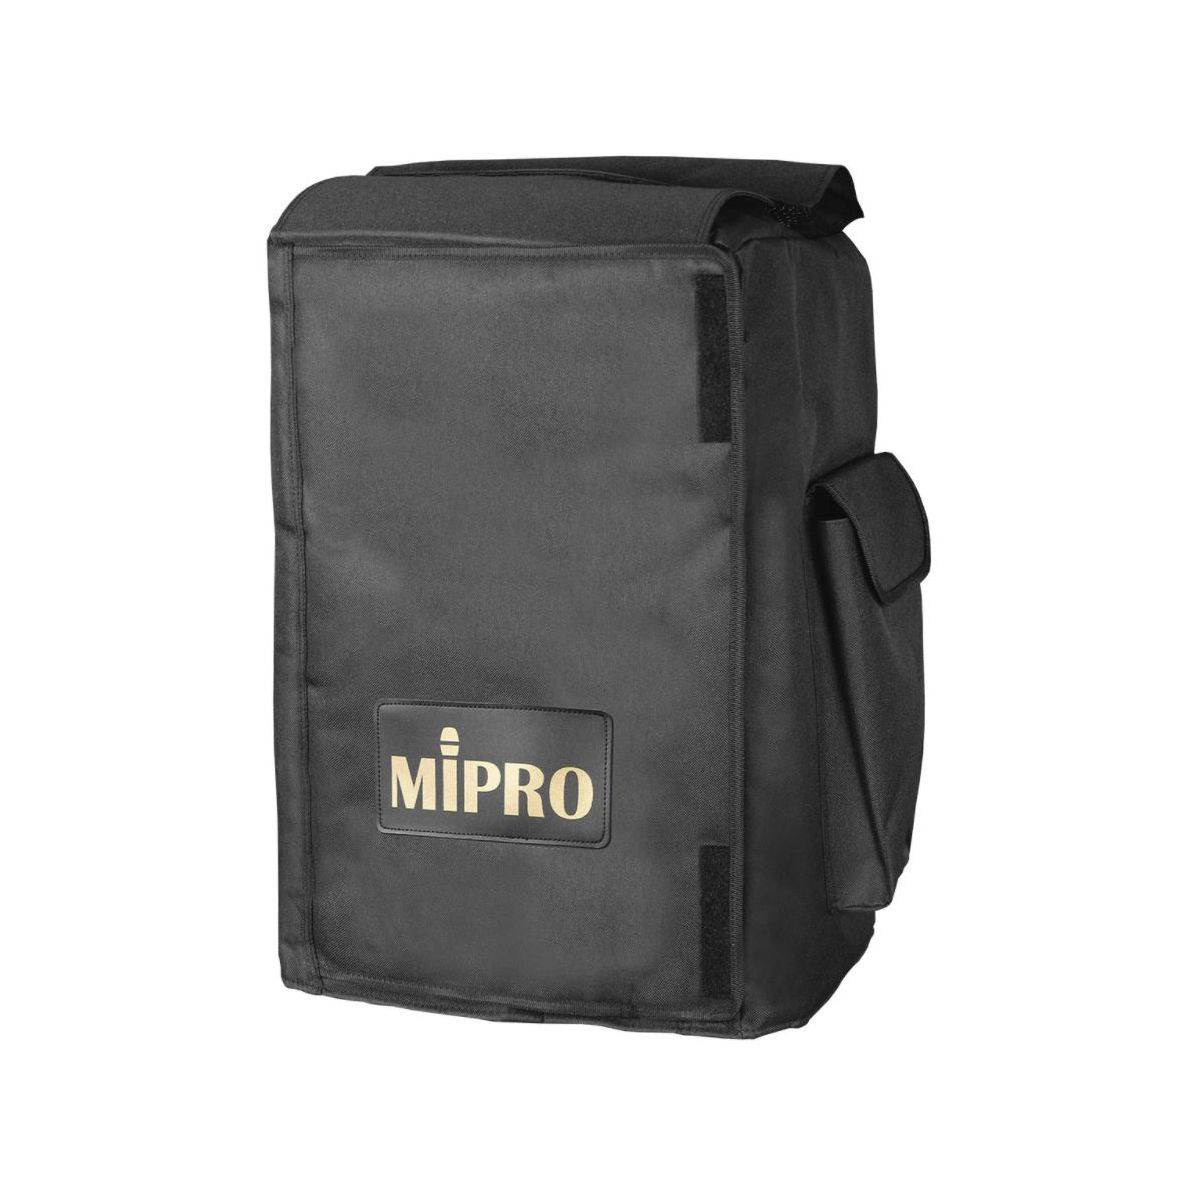 Housses sonos portables - Mipro - SC 808